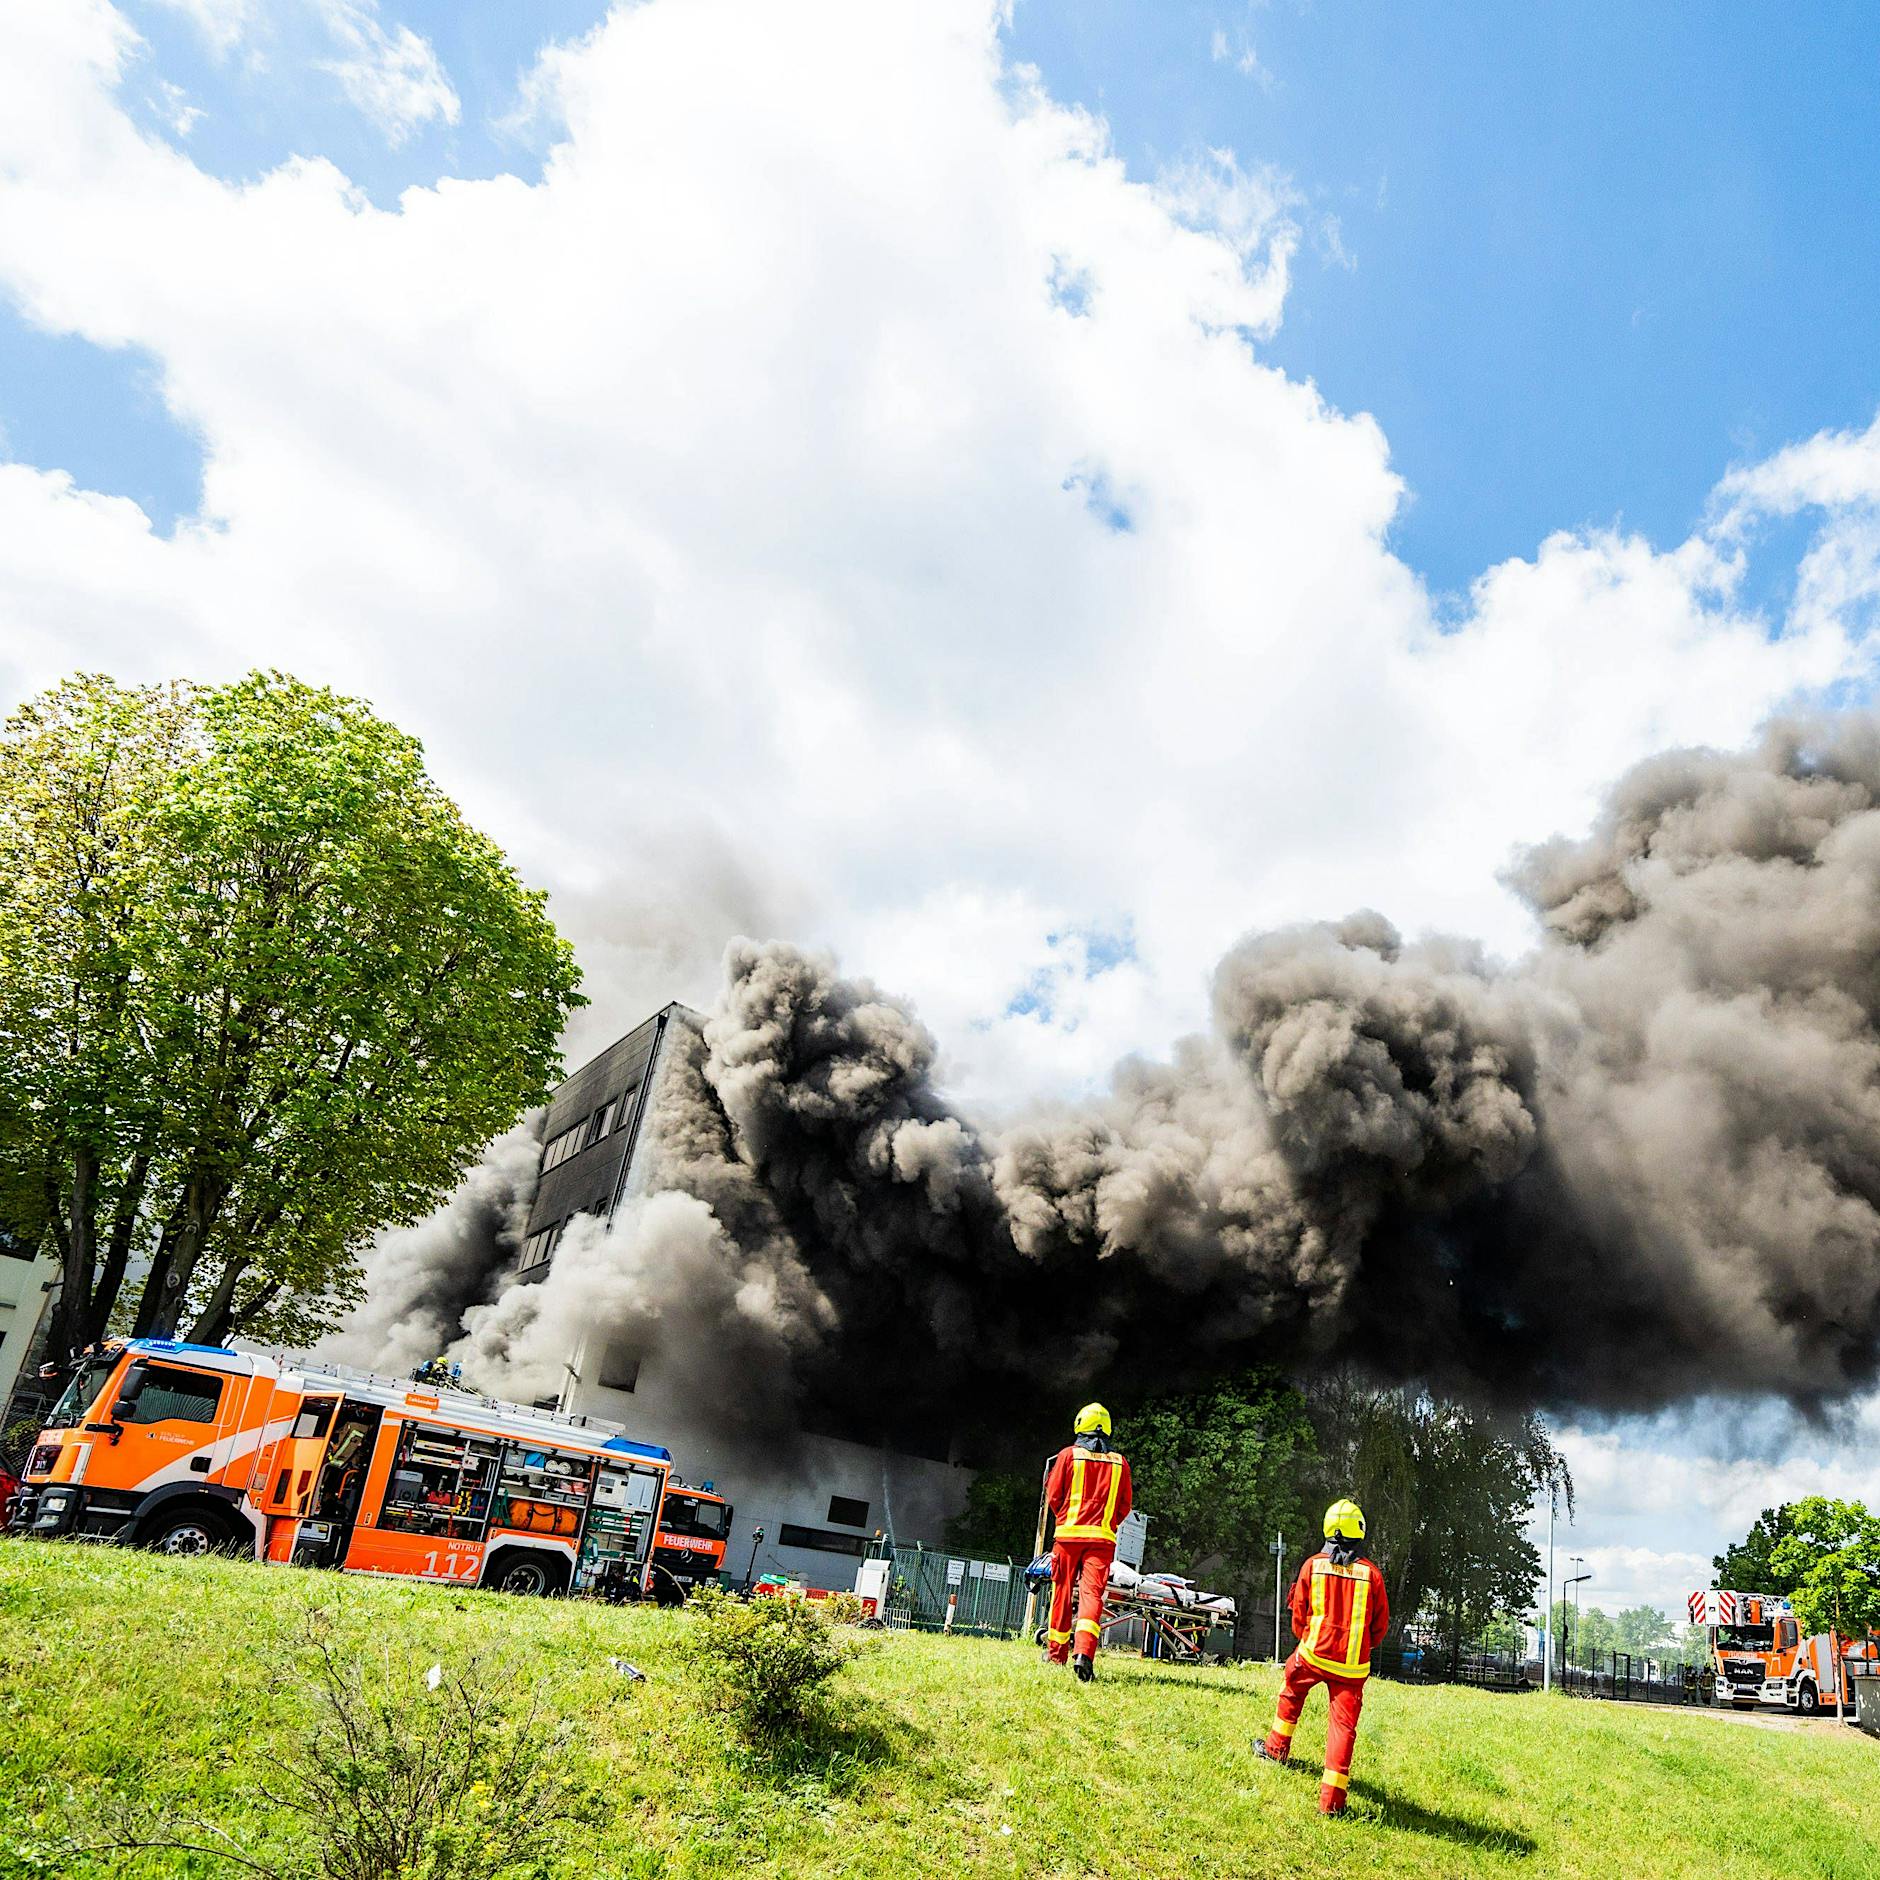 Brand in Lichterfelde: Chemikalien in Wasser und Nahrung – Einsatzkräfte in Gefahr gebracht?